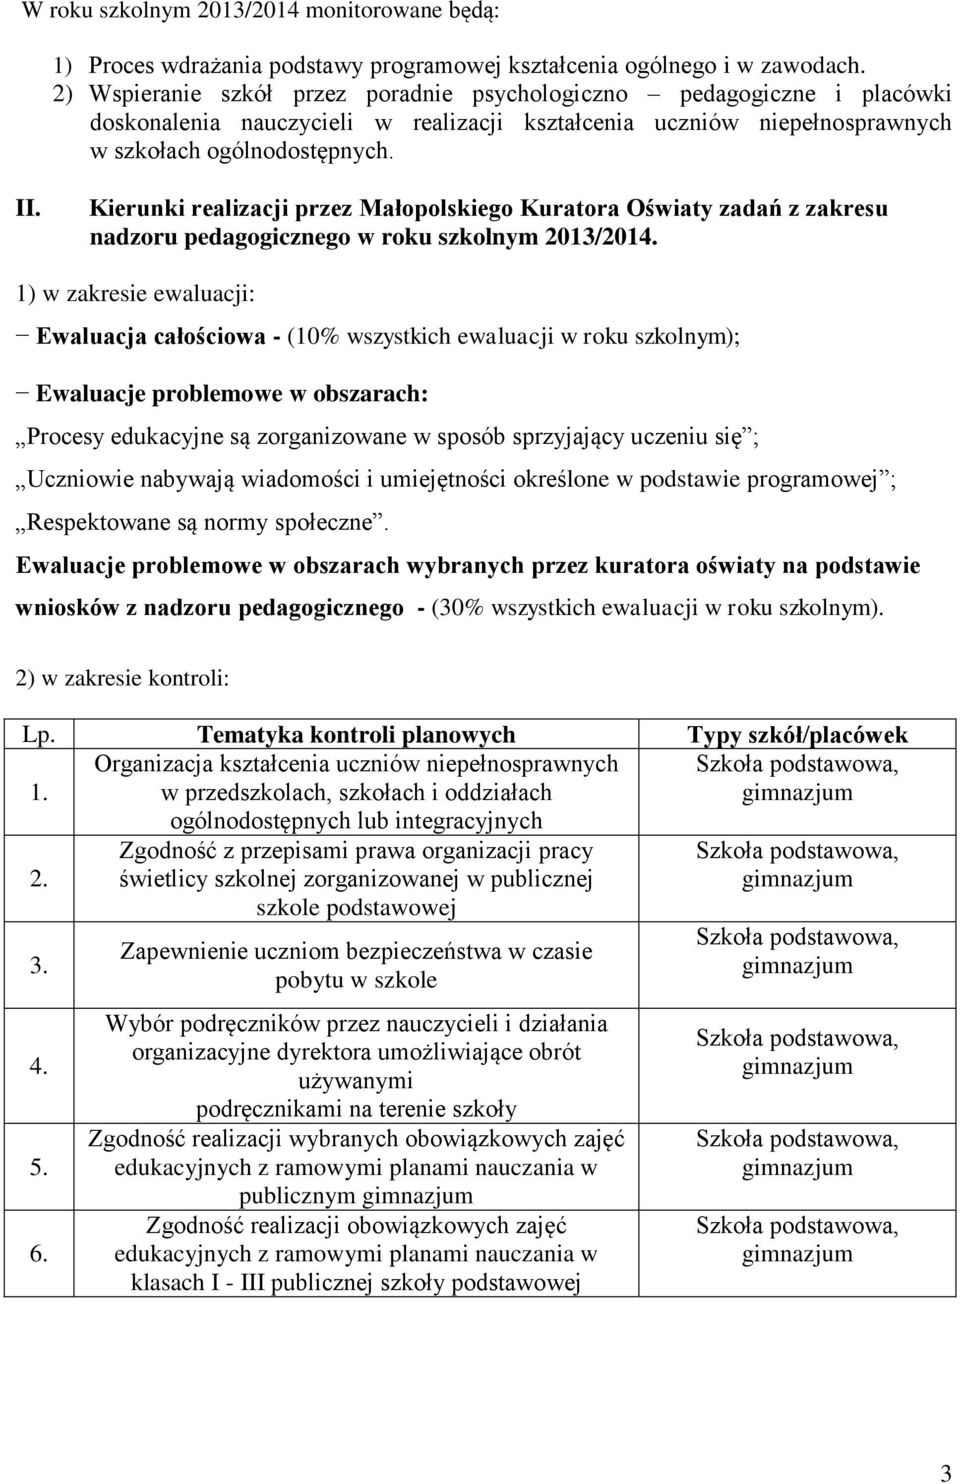 Kierunki realizacji przez Małopolskiego Kuratora Oświaty zadań z zakresu nadzoru pedagogicznego w roku szkolnym 2013/2014.